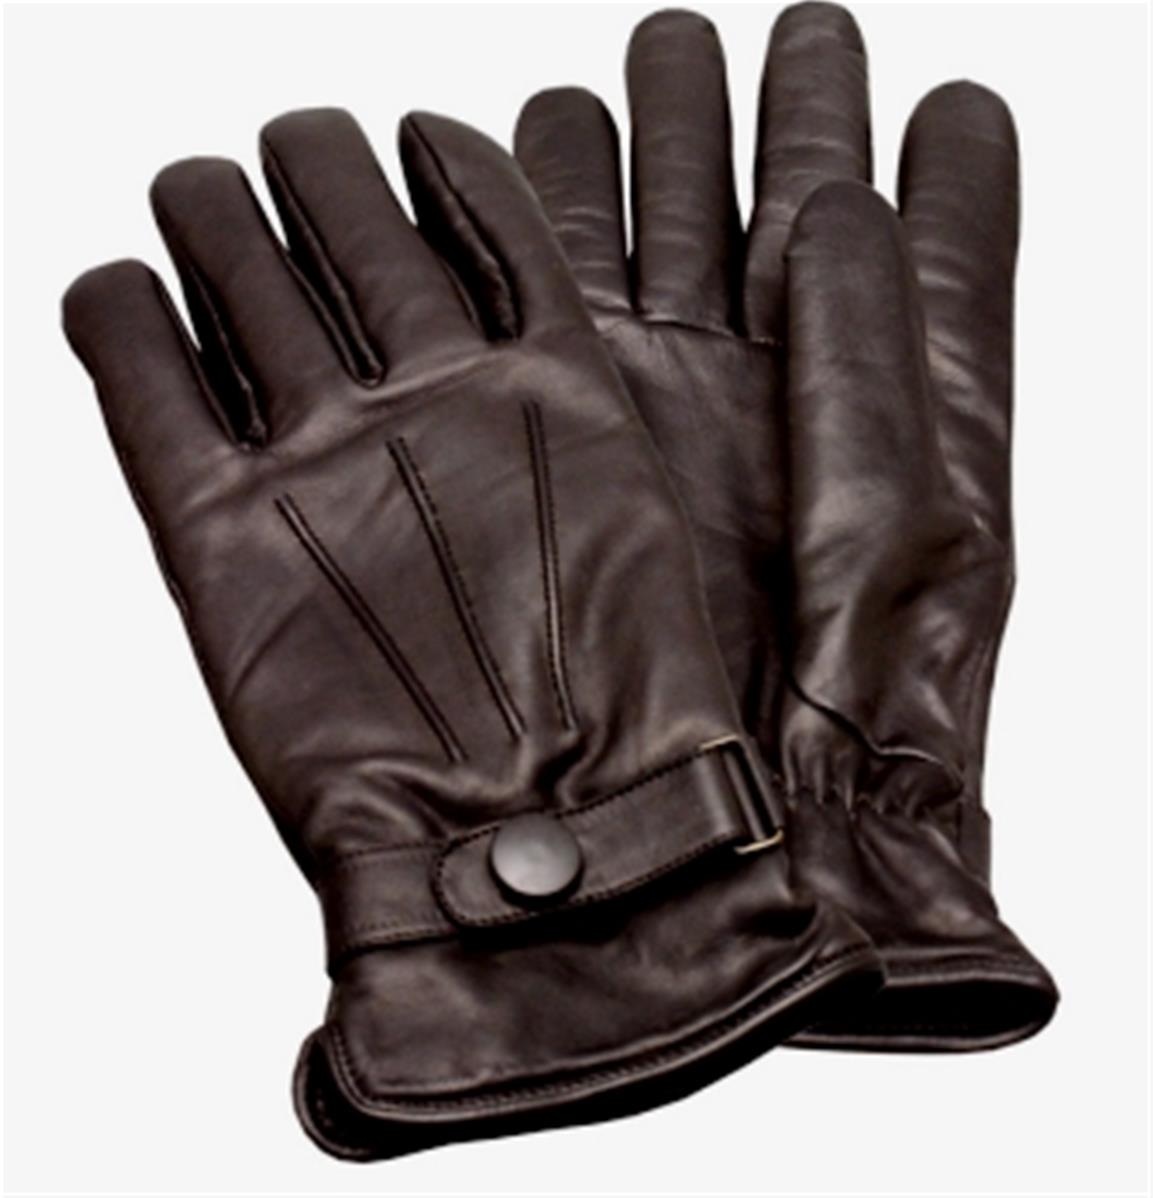 Cobeky 2 paires de gants r/ésistants aux coupures de qualit/é alimentaire niveau 5 gants de cuisine pour louverture des hu/îtres moyen